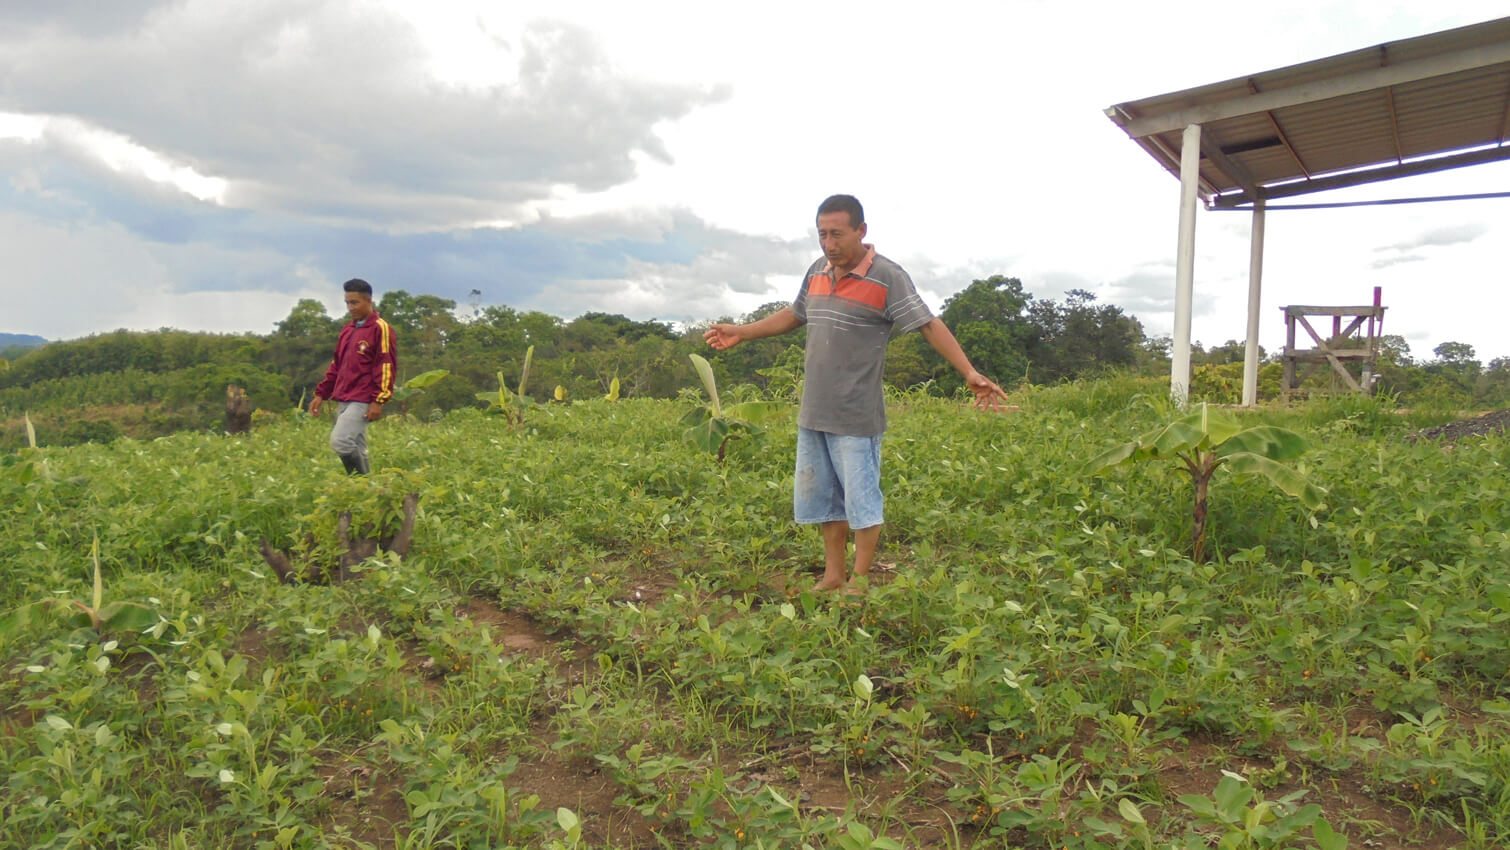 Producteurs cacahuÃ¨tes agroforesterie coopÃ©rative ASOPROCAM en Equateur